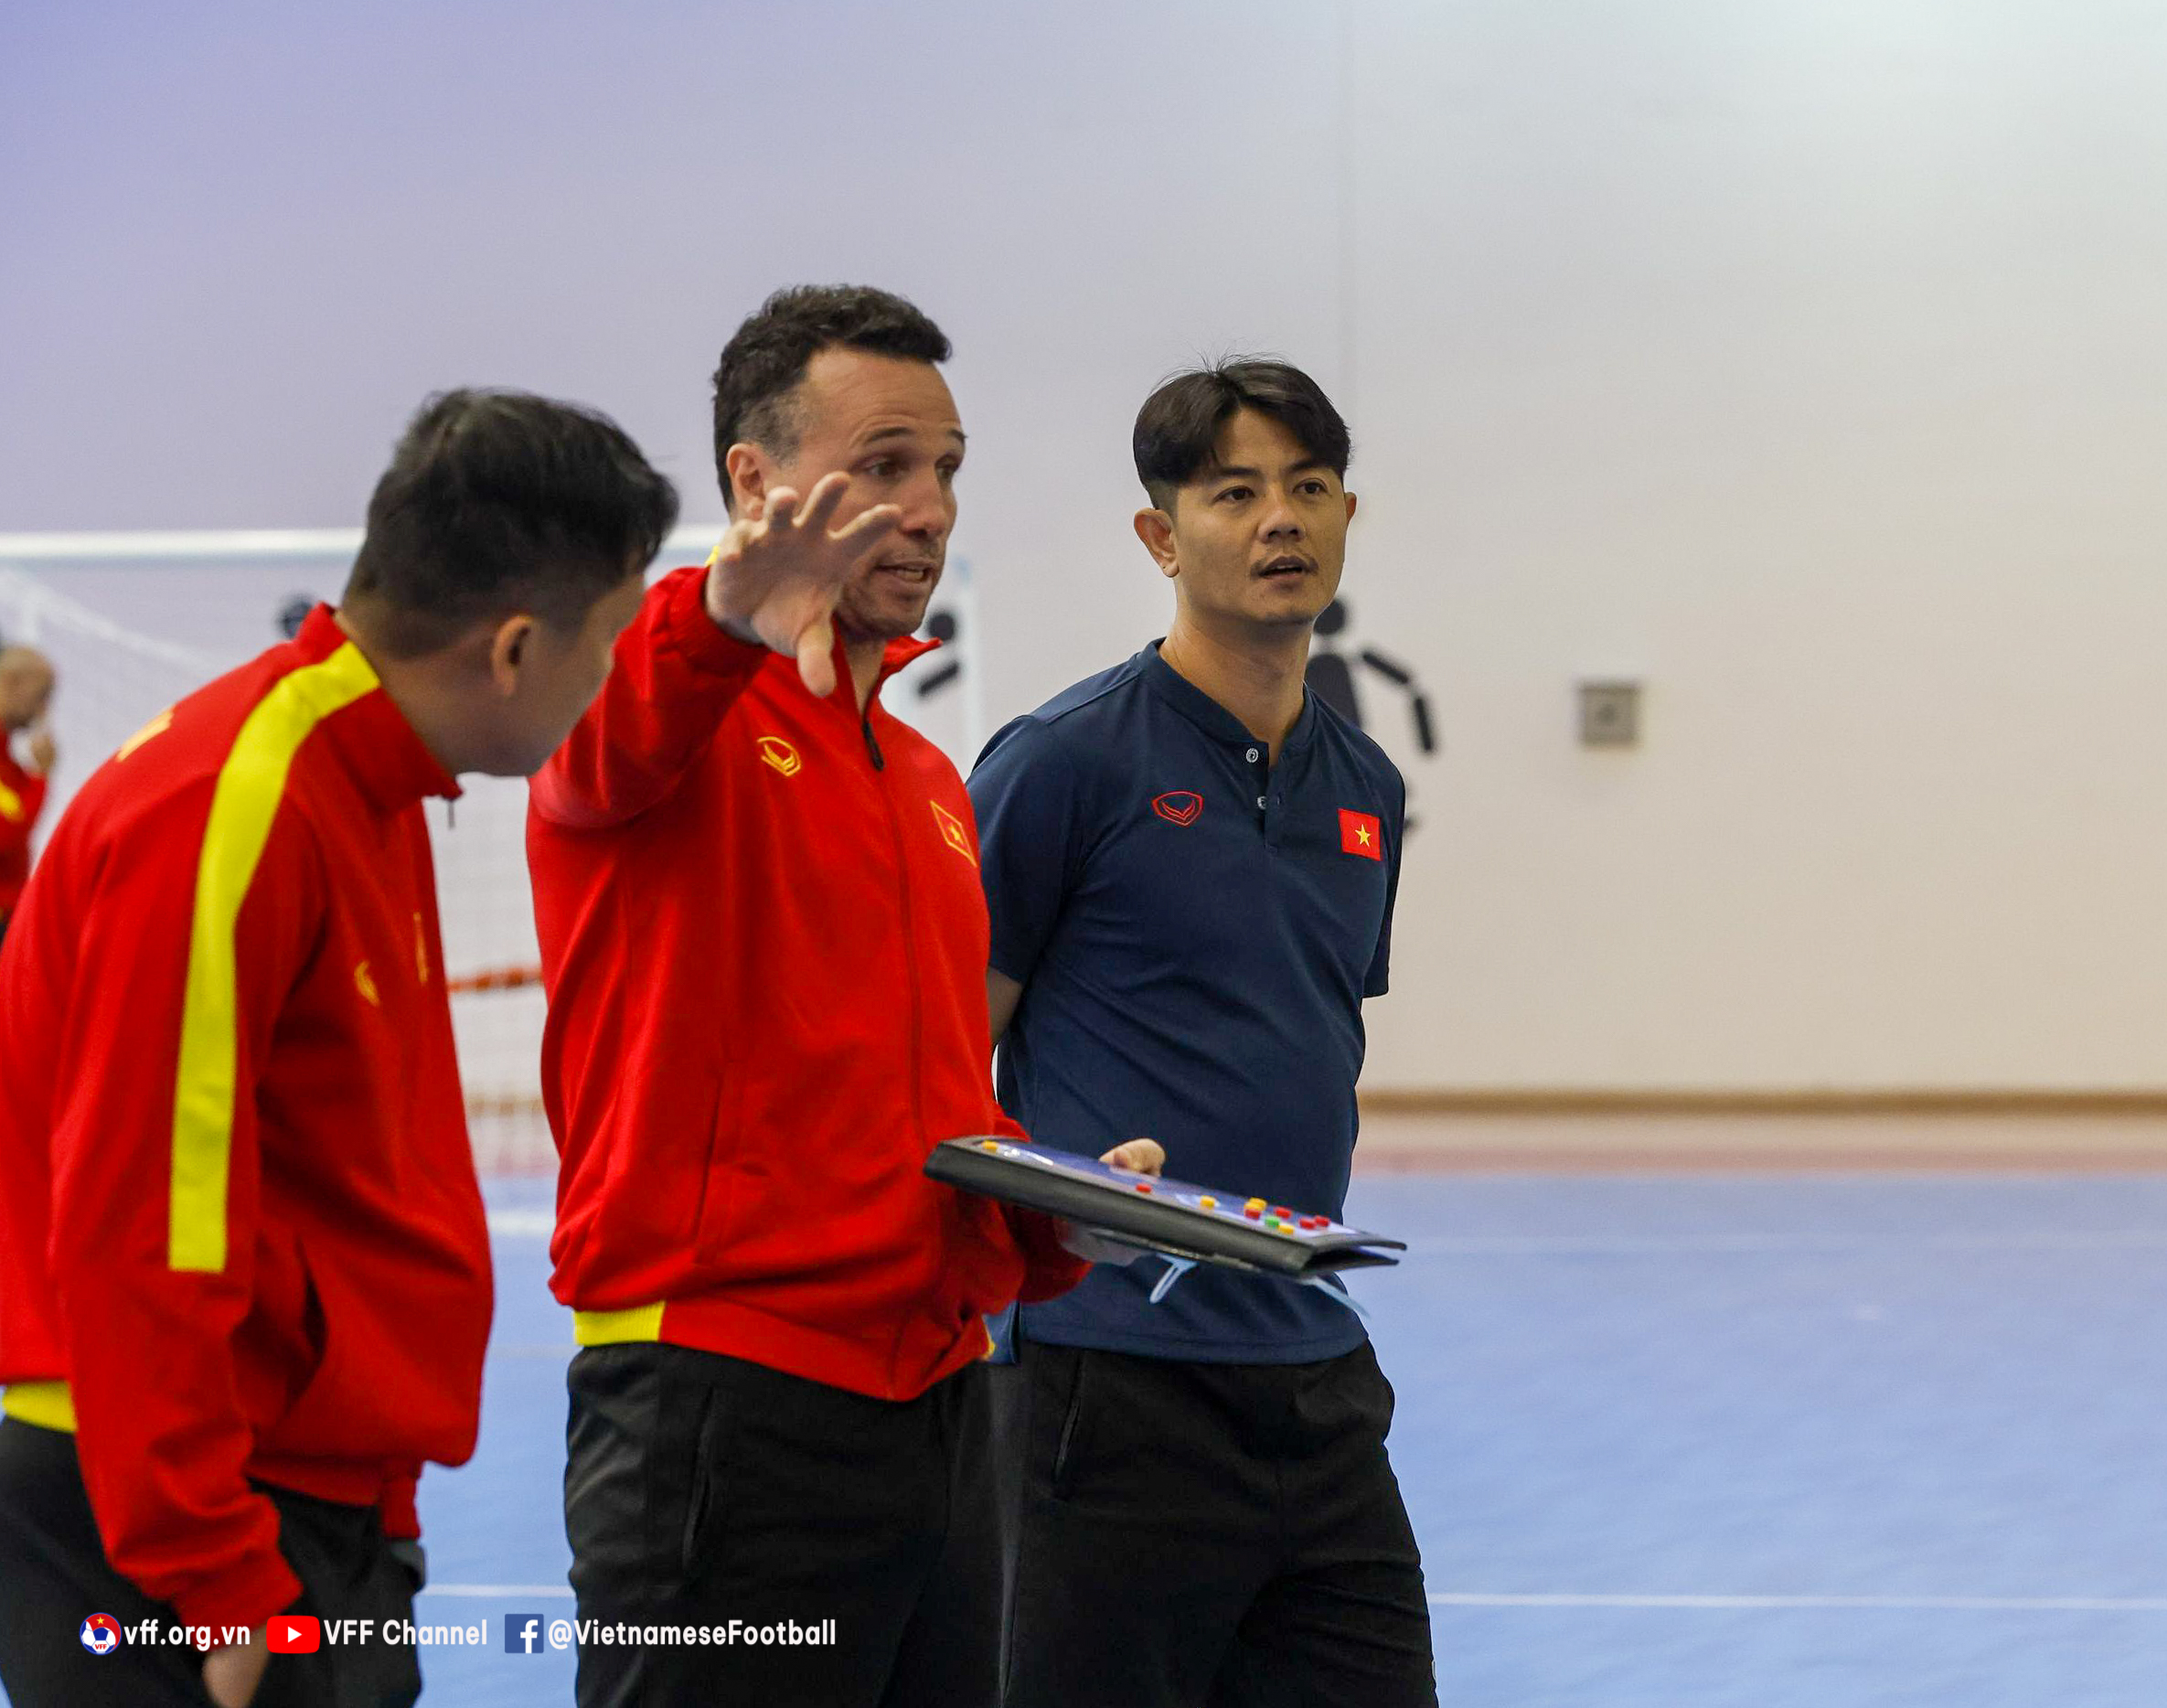 ĐT Việt Nam đẩy cao khối lượng, chọn điểm rơi trước thềm VCK futsal châu Á 2022 - Ảnh 3.